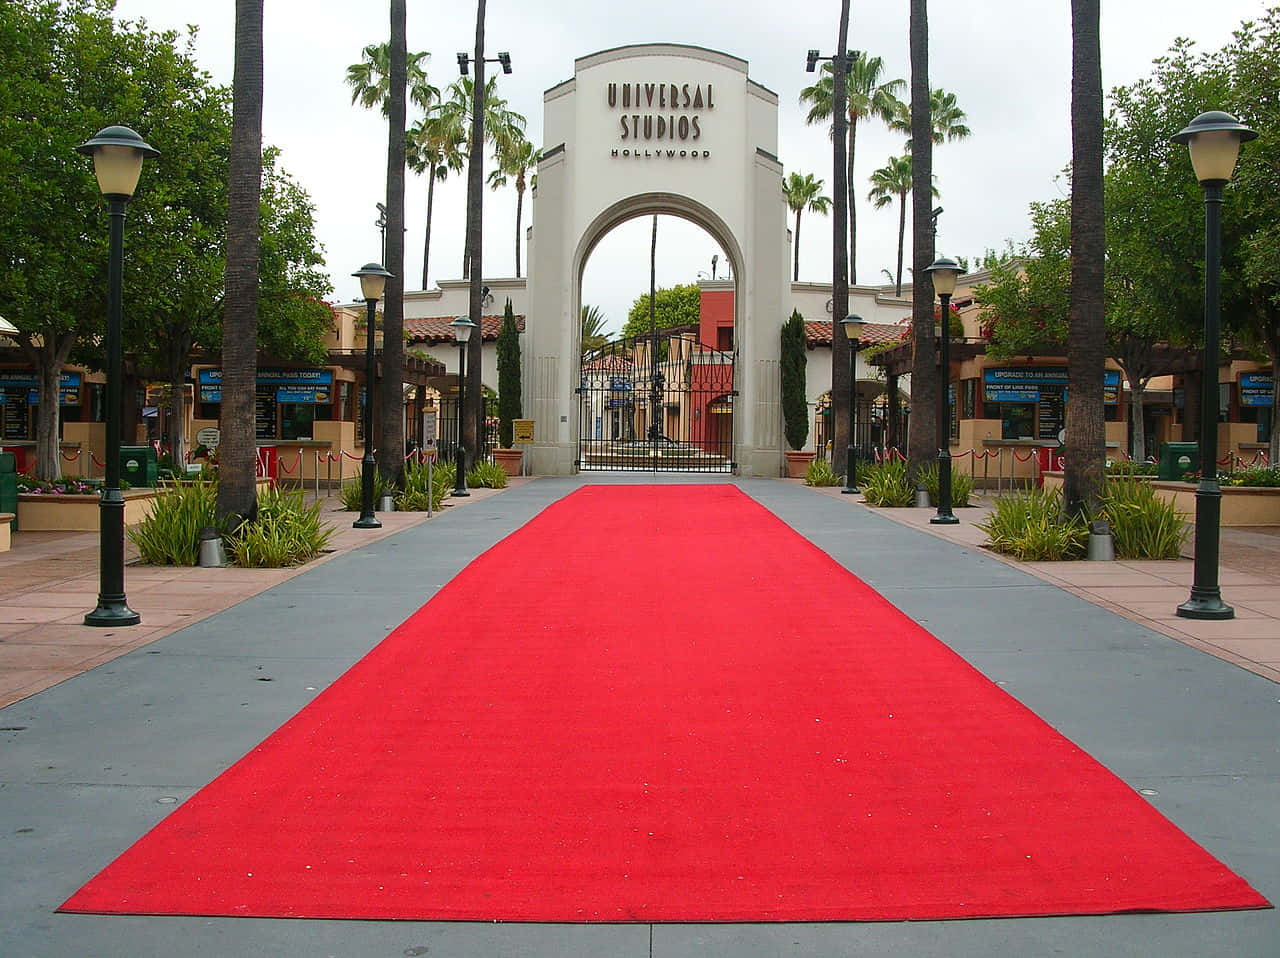 Sfondodi Ingresso Sul Tappeto Rosso Degli Universal Studios Hollywood.